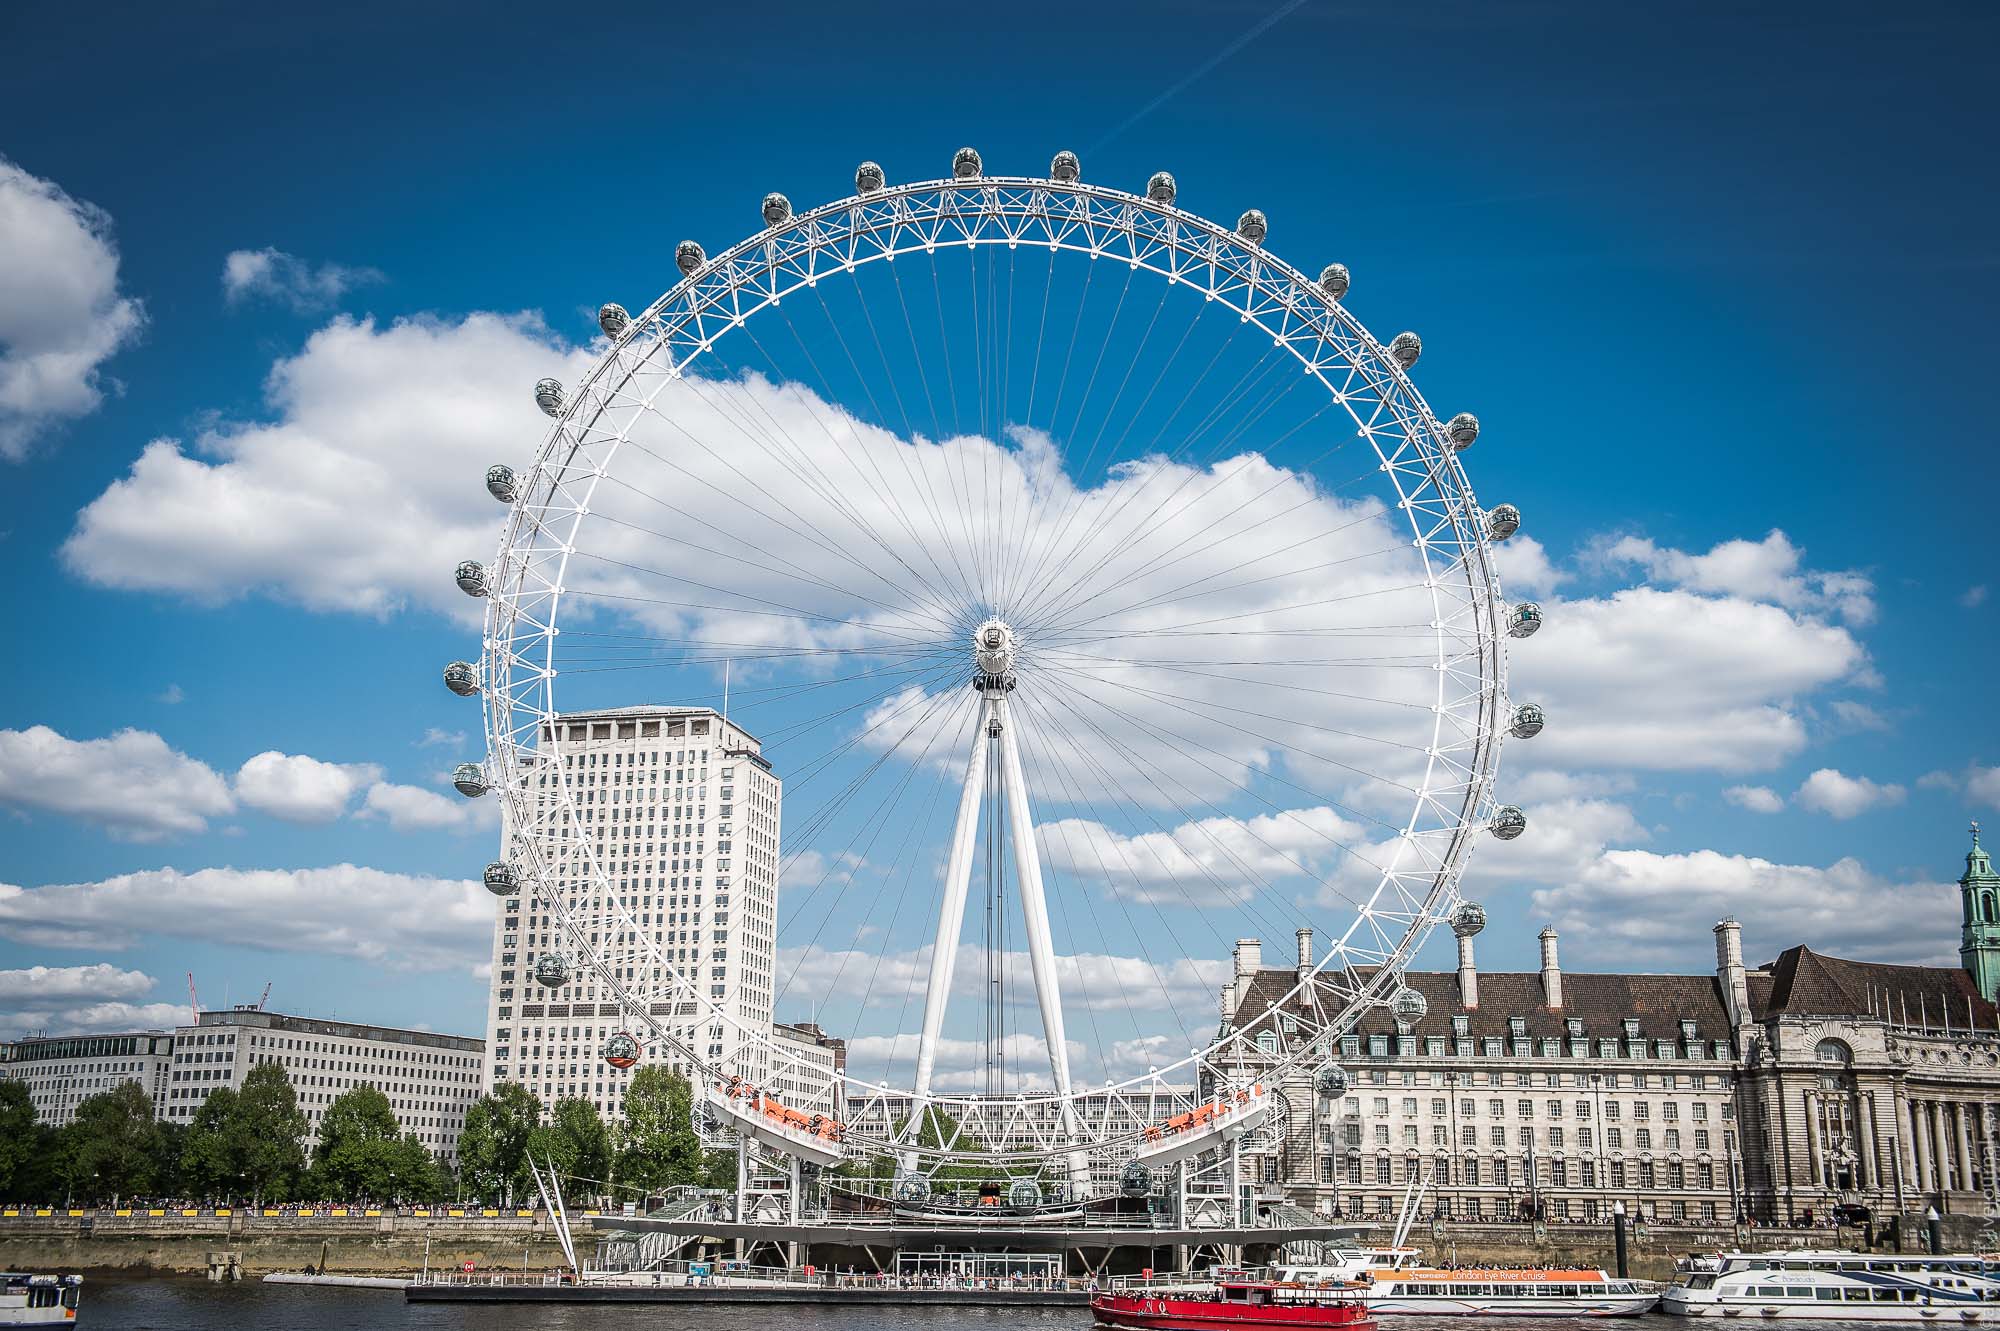 One of the london s. Колесо обозрения Лондонский глаз в Лондоне. Колесо обозрения "Лондонский глаз" (London Eye). Великобритания колесо обозрения London Eye. Достопримечательности Лондона «Лондонский глаз» (London Eye).